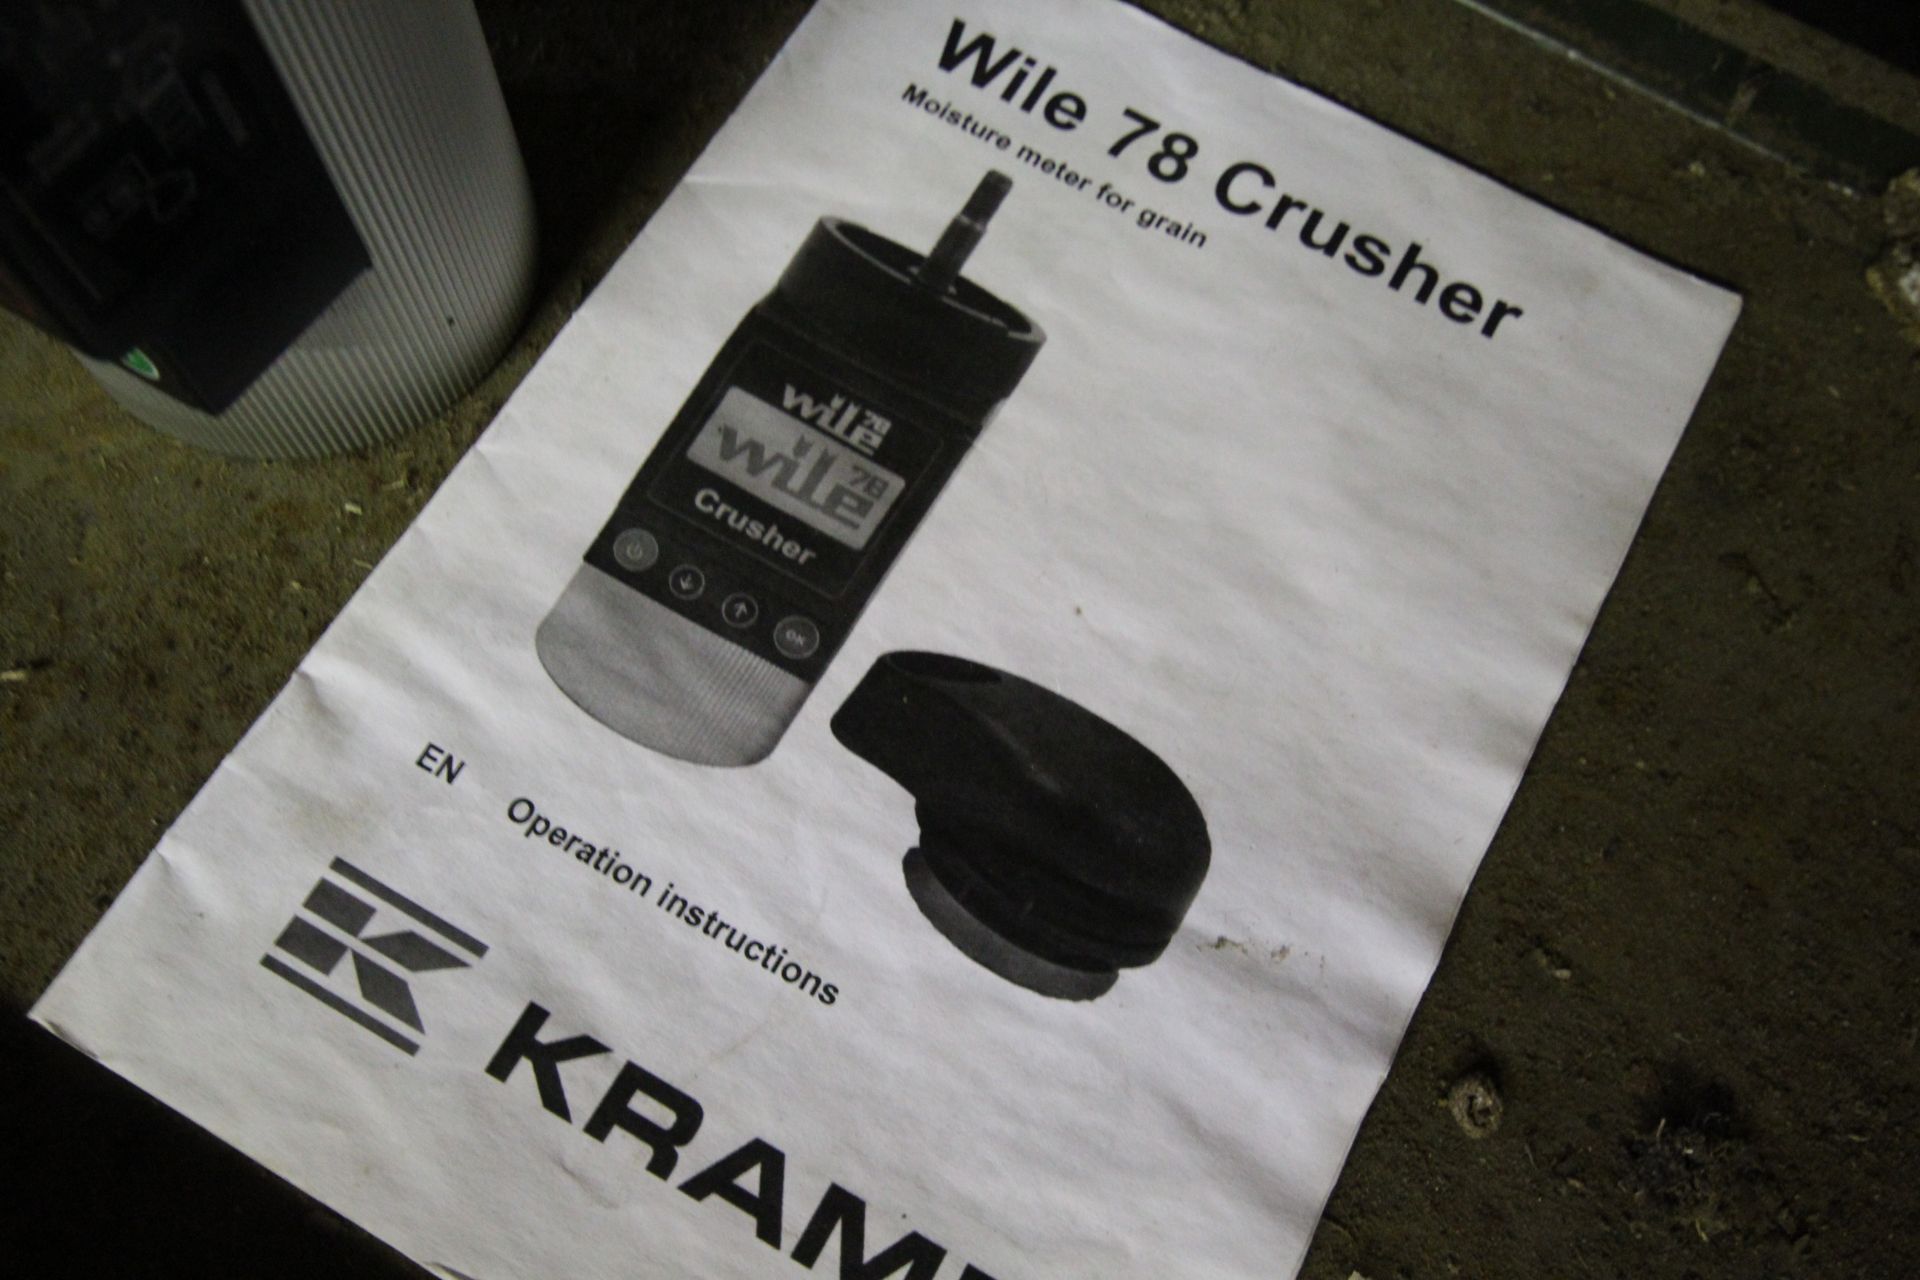 Wile 78 Crusher moisture meter. V - Image 3 of 3